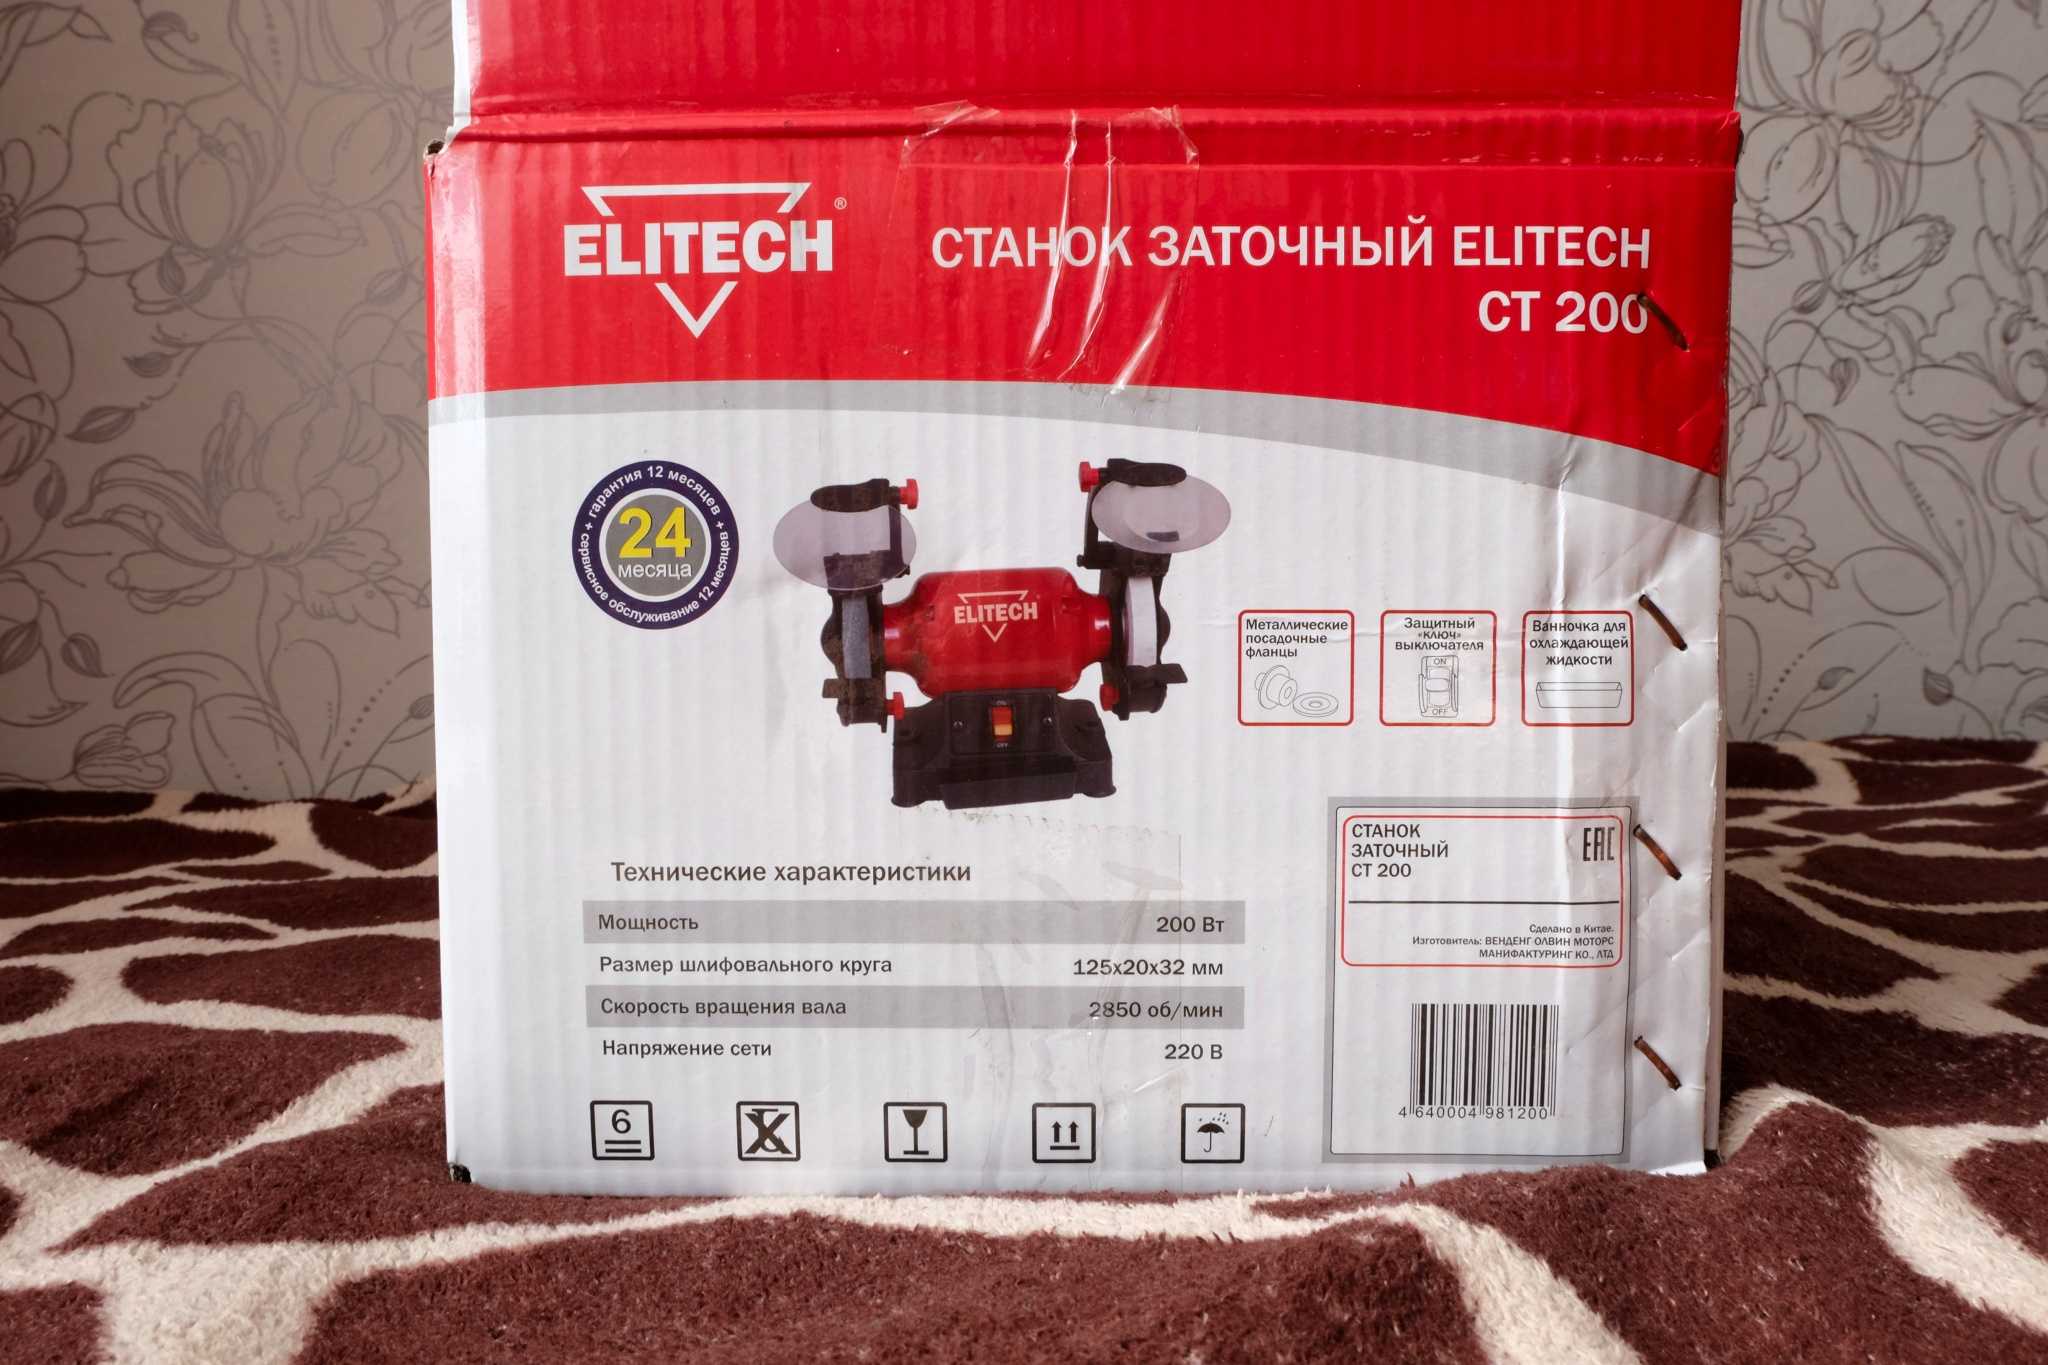 Elitech мм 200к | elitech мм 200к купить в волгограде, цена в магазинах